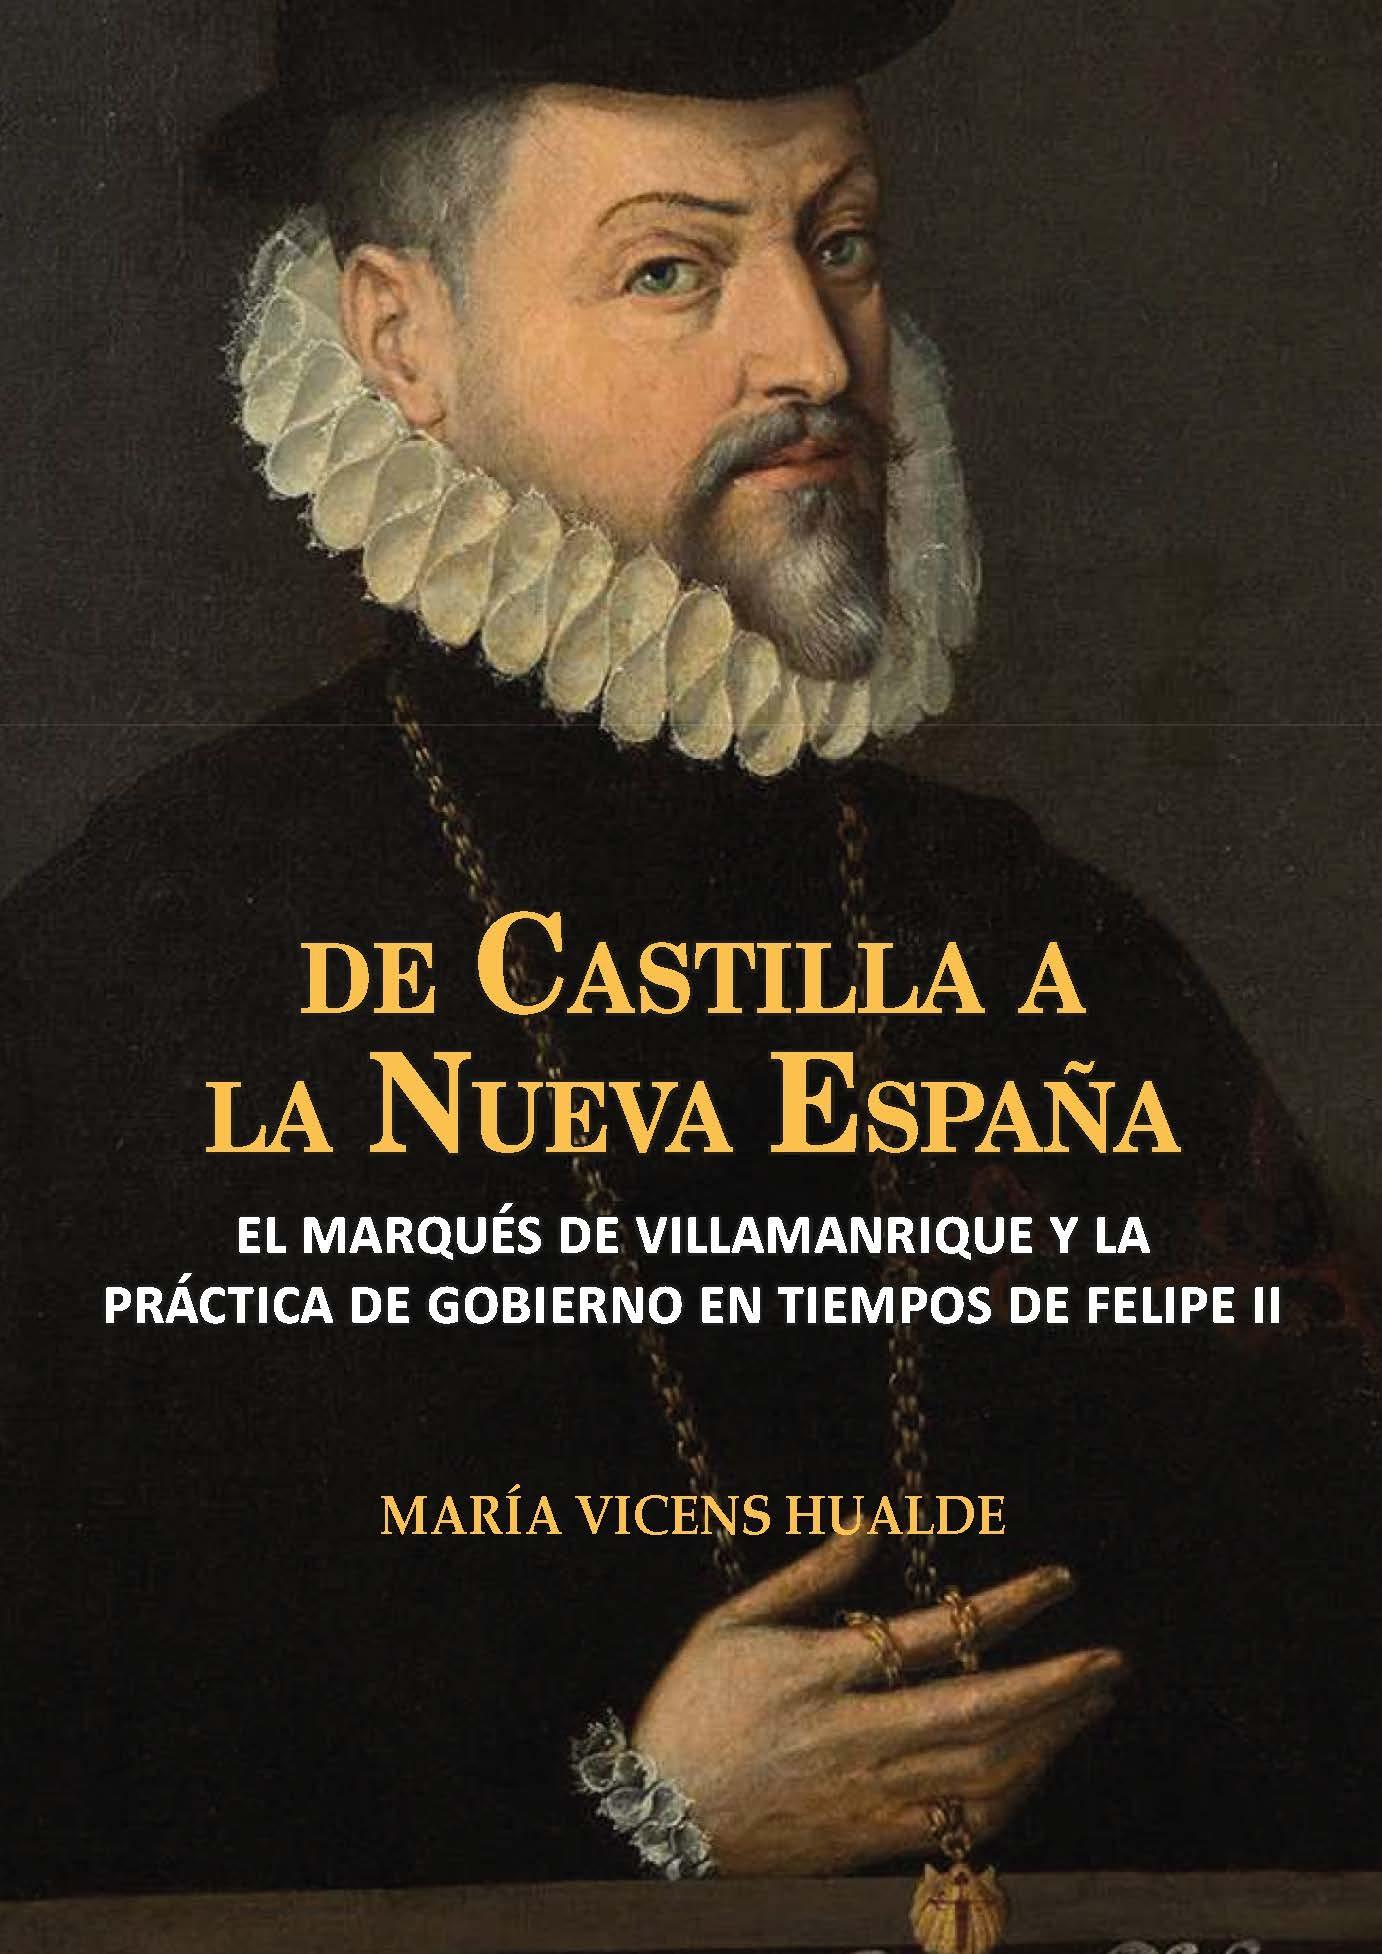 De Castilla a la Nueva España "El marqués de Villamanrique y la práctica de gobierno en tiempos de Felipe II"